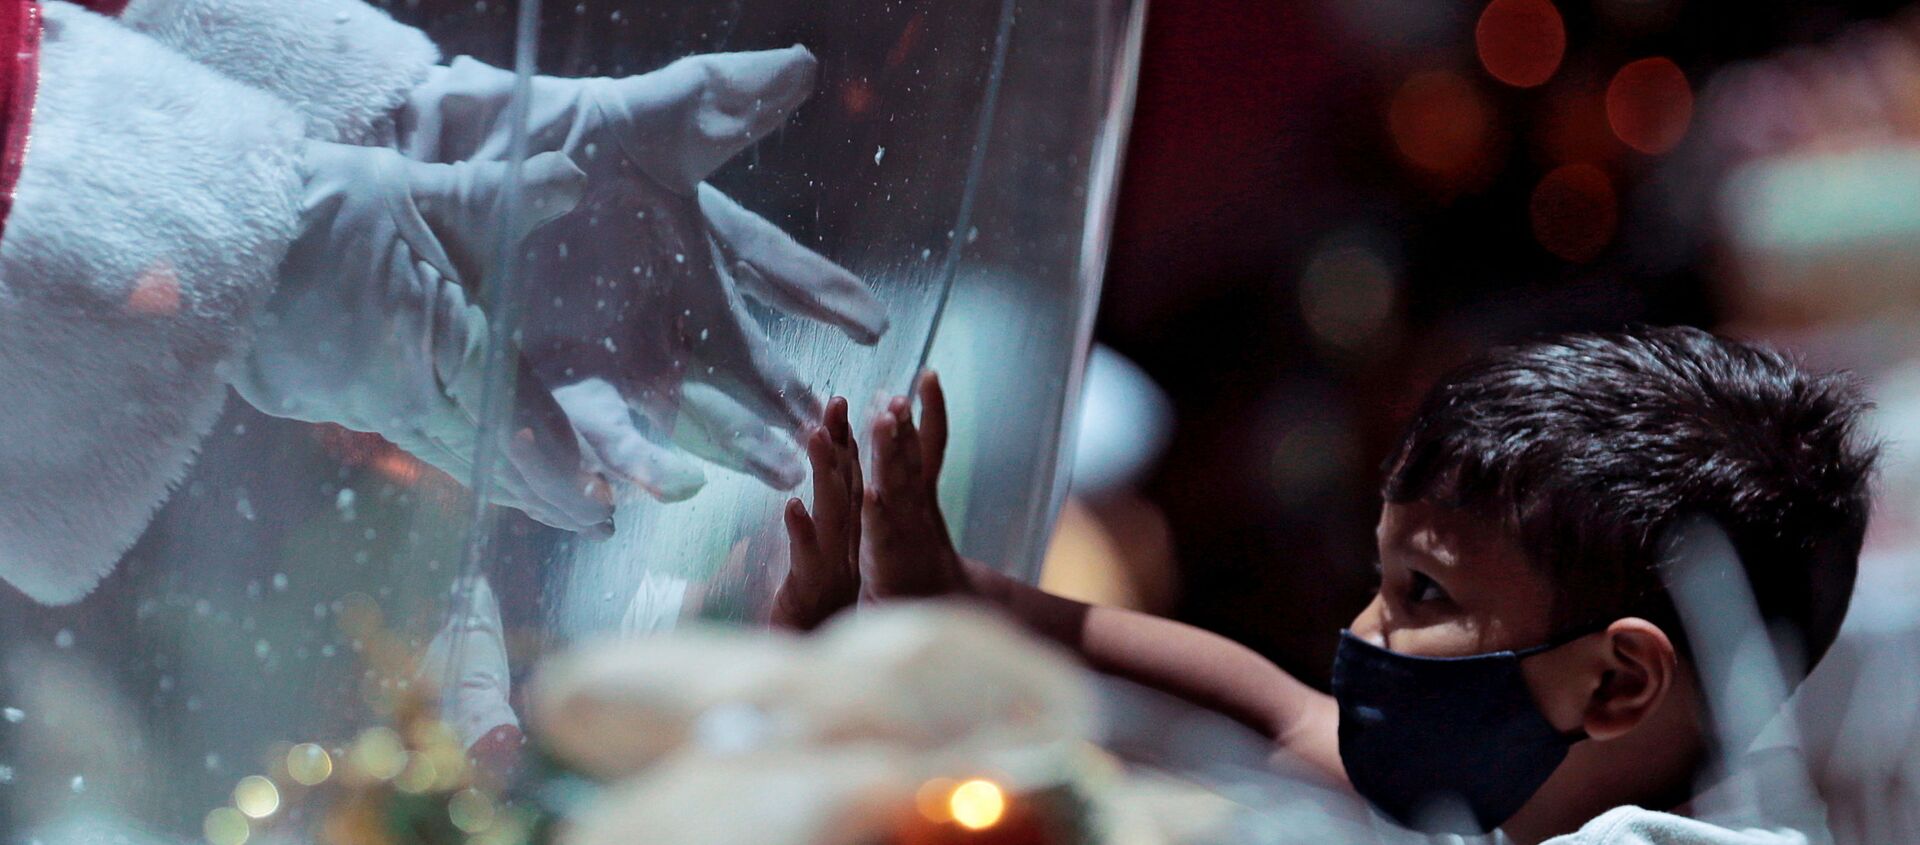 أبيليو دا كروز بينتو، 77 عامًا، يرتدي زي بابا نويل داخل فقاعة بلاستيكية، يحيي طفلًا في مركز تسوق وسط تفشي فيروس كورونا (كوفيد-19) في برازيليا، البرازيل، 15 ديسمبر 2020. - سبوتنيك عربي, 1920, 23.03.2021